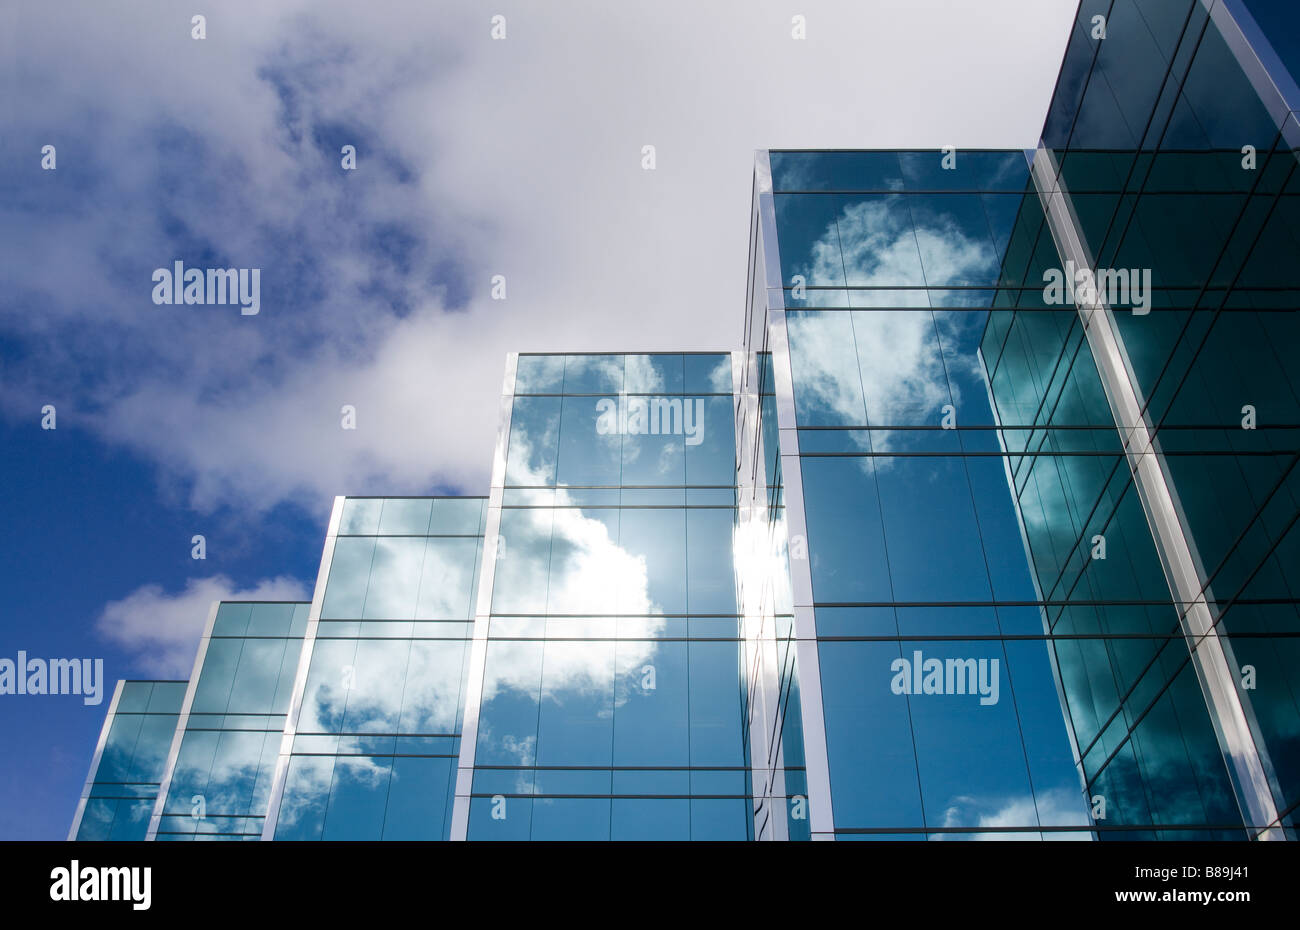 Fünf Türme eine elegante moderne Glas-Bürogebäudes mit Wolken und Himmel reflektiert auf der Oberfläche der Gebäude Stockfoto